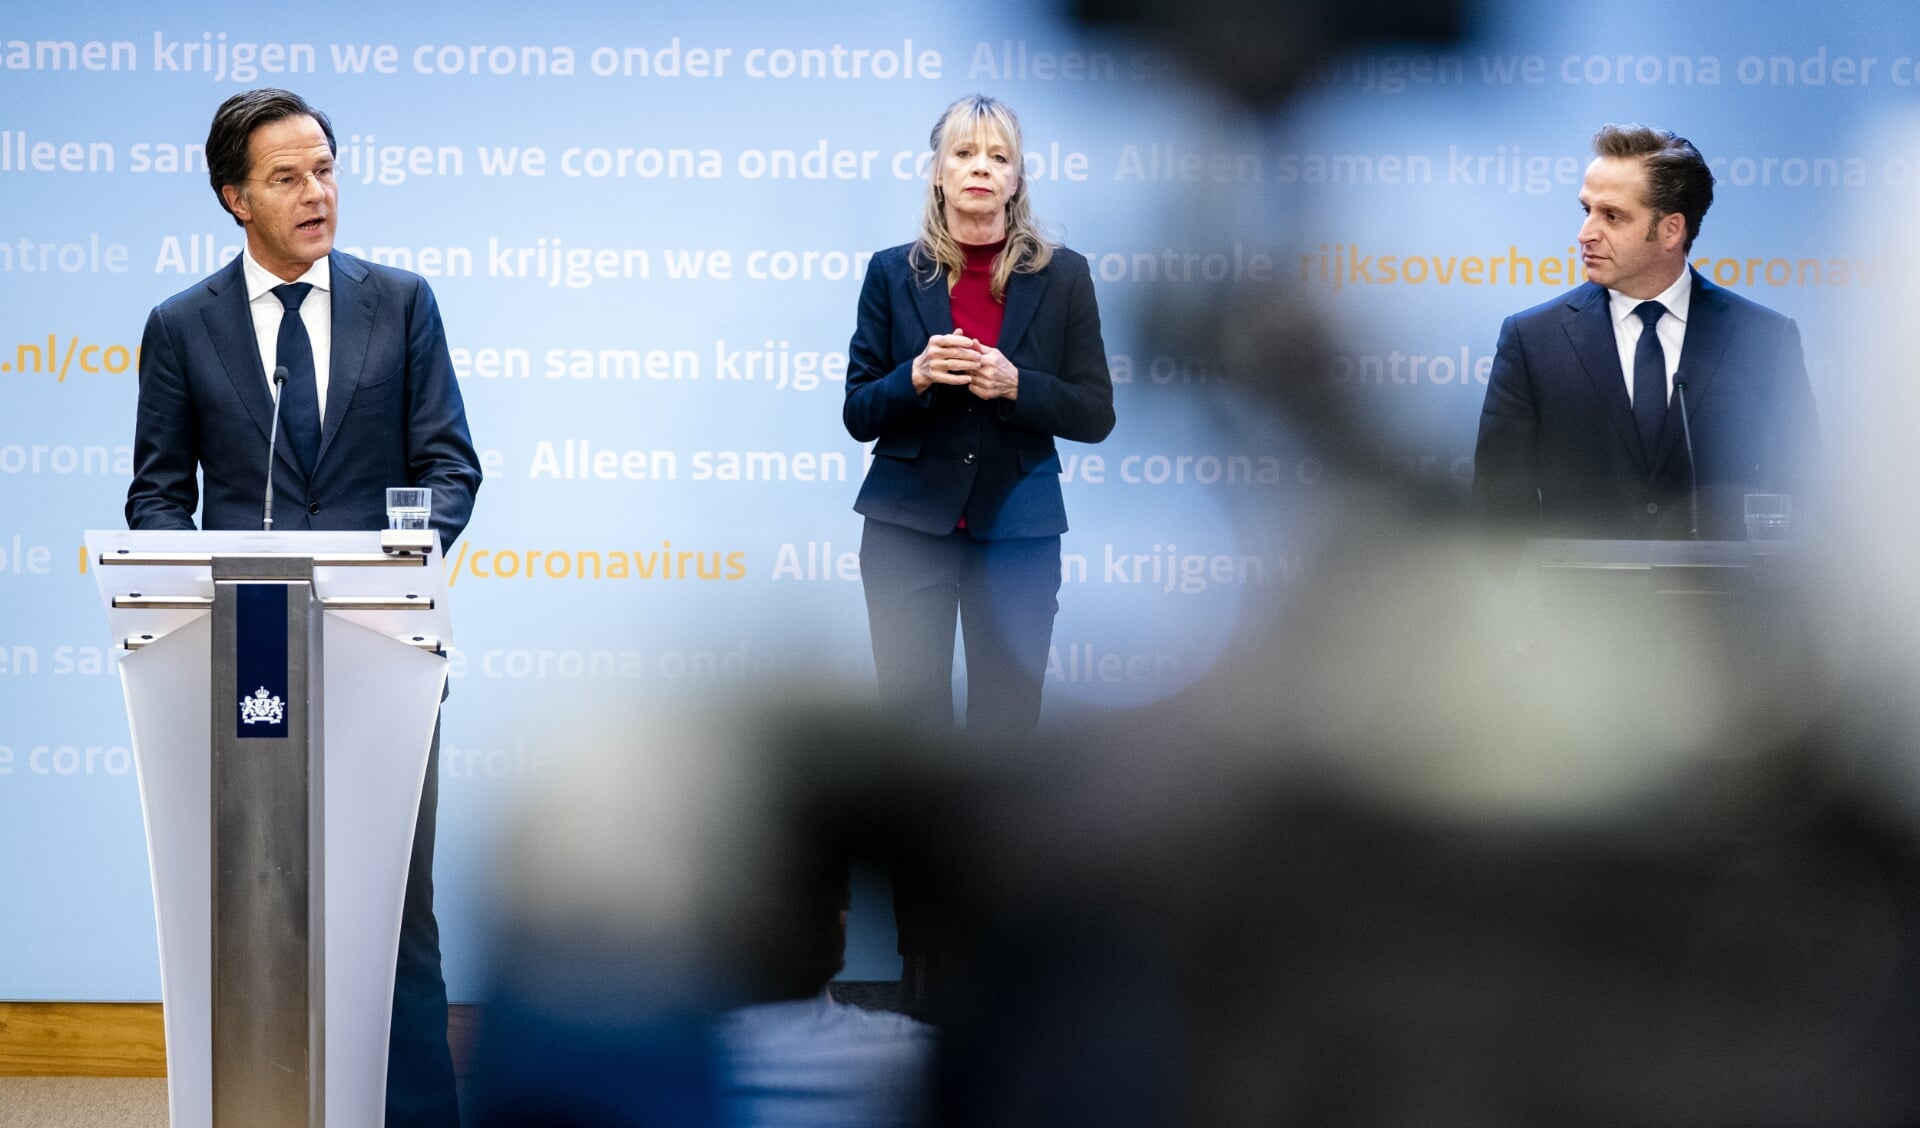 Demissionair premier Mark Rutte en demissionair minister Hugo de Jonge (Volksgezondheid, Welzijn en Sport) geven een toelichting op de coronamaatregelen in Nederland.